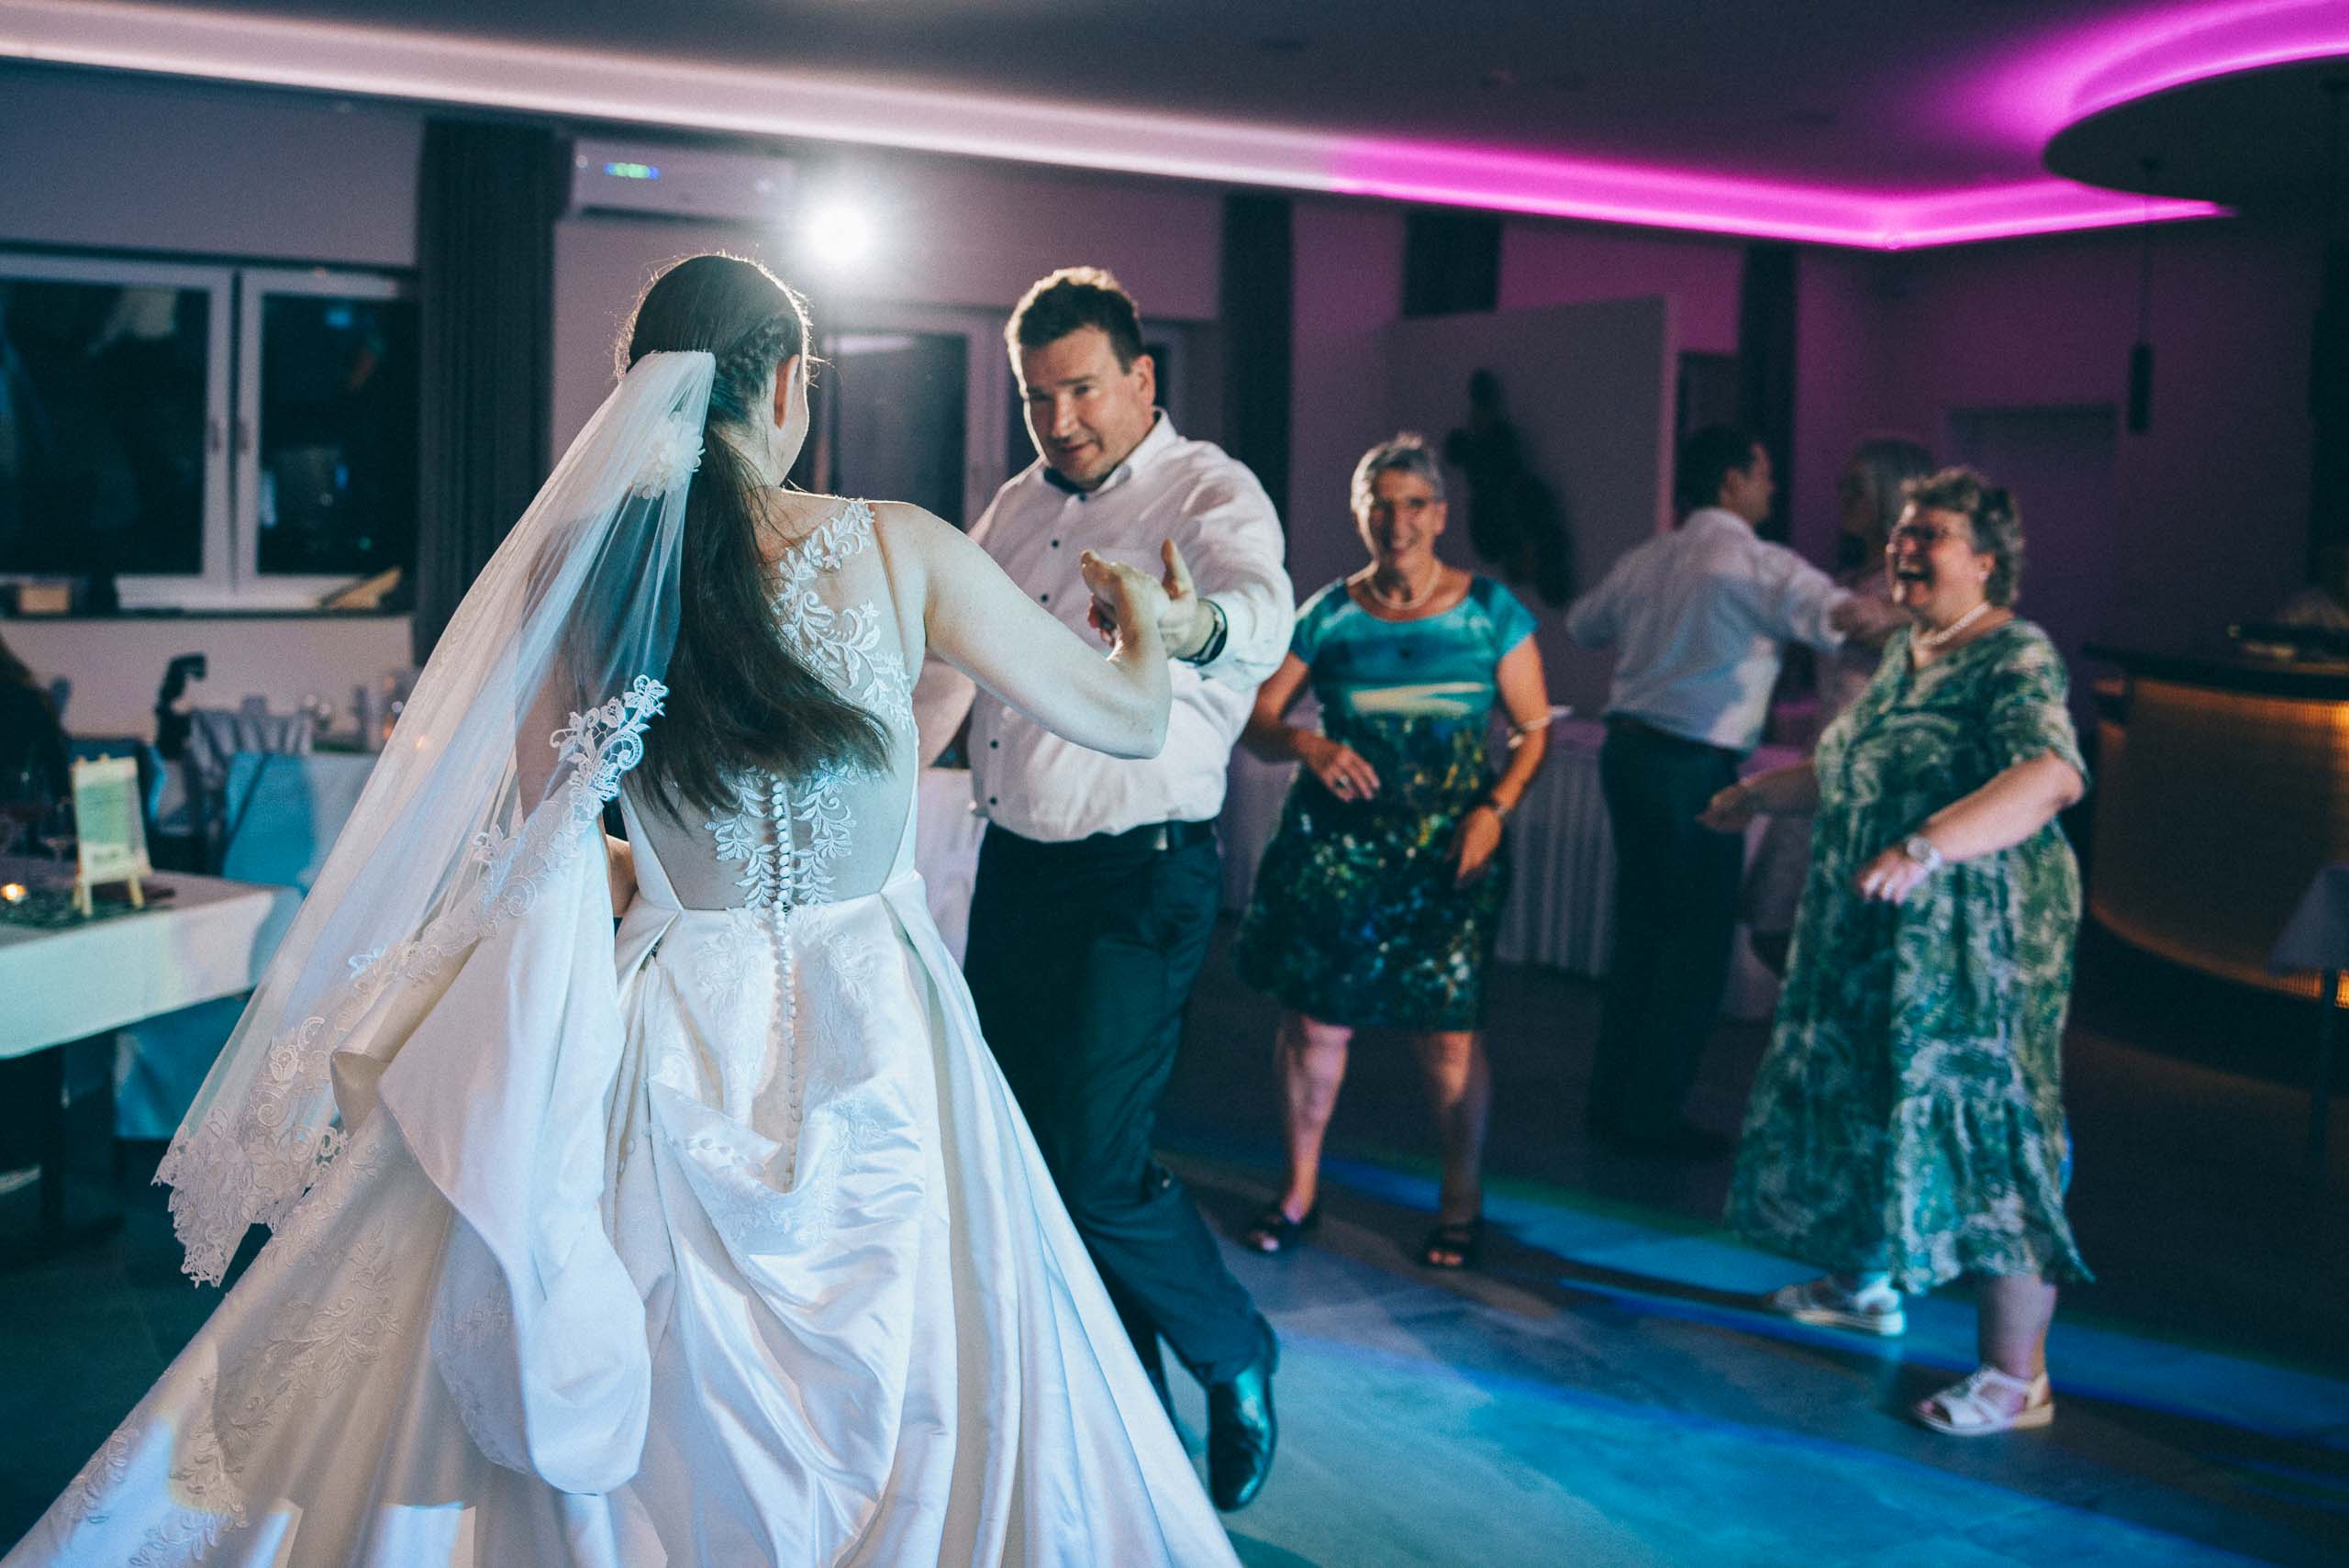 Szene einer Hochzeitsfeier. Der Hochzeitsfotograf hat das Brautpaar während des Hochzeitstanzes fotografiert. Das aufwändig gestaltete Hochzeitskleid ist von hinten zu sehen. Im Hintergrund tanzen Gäste.